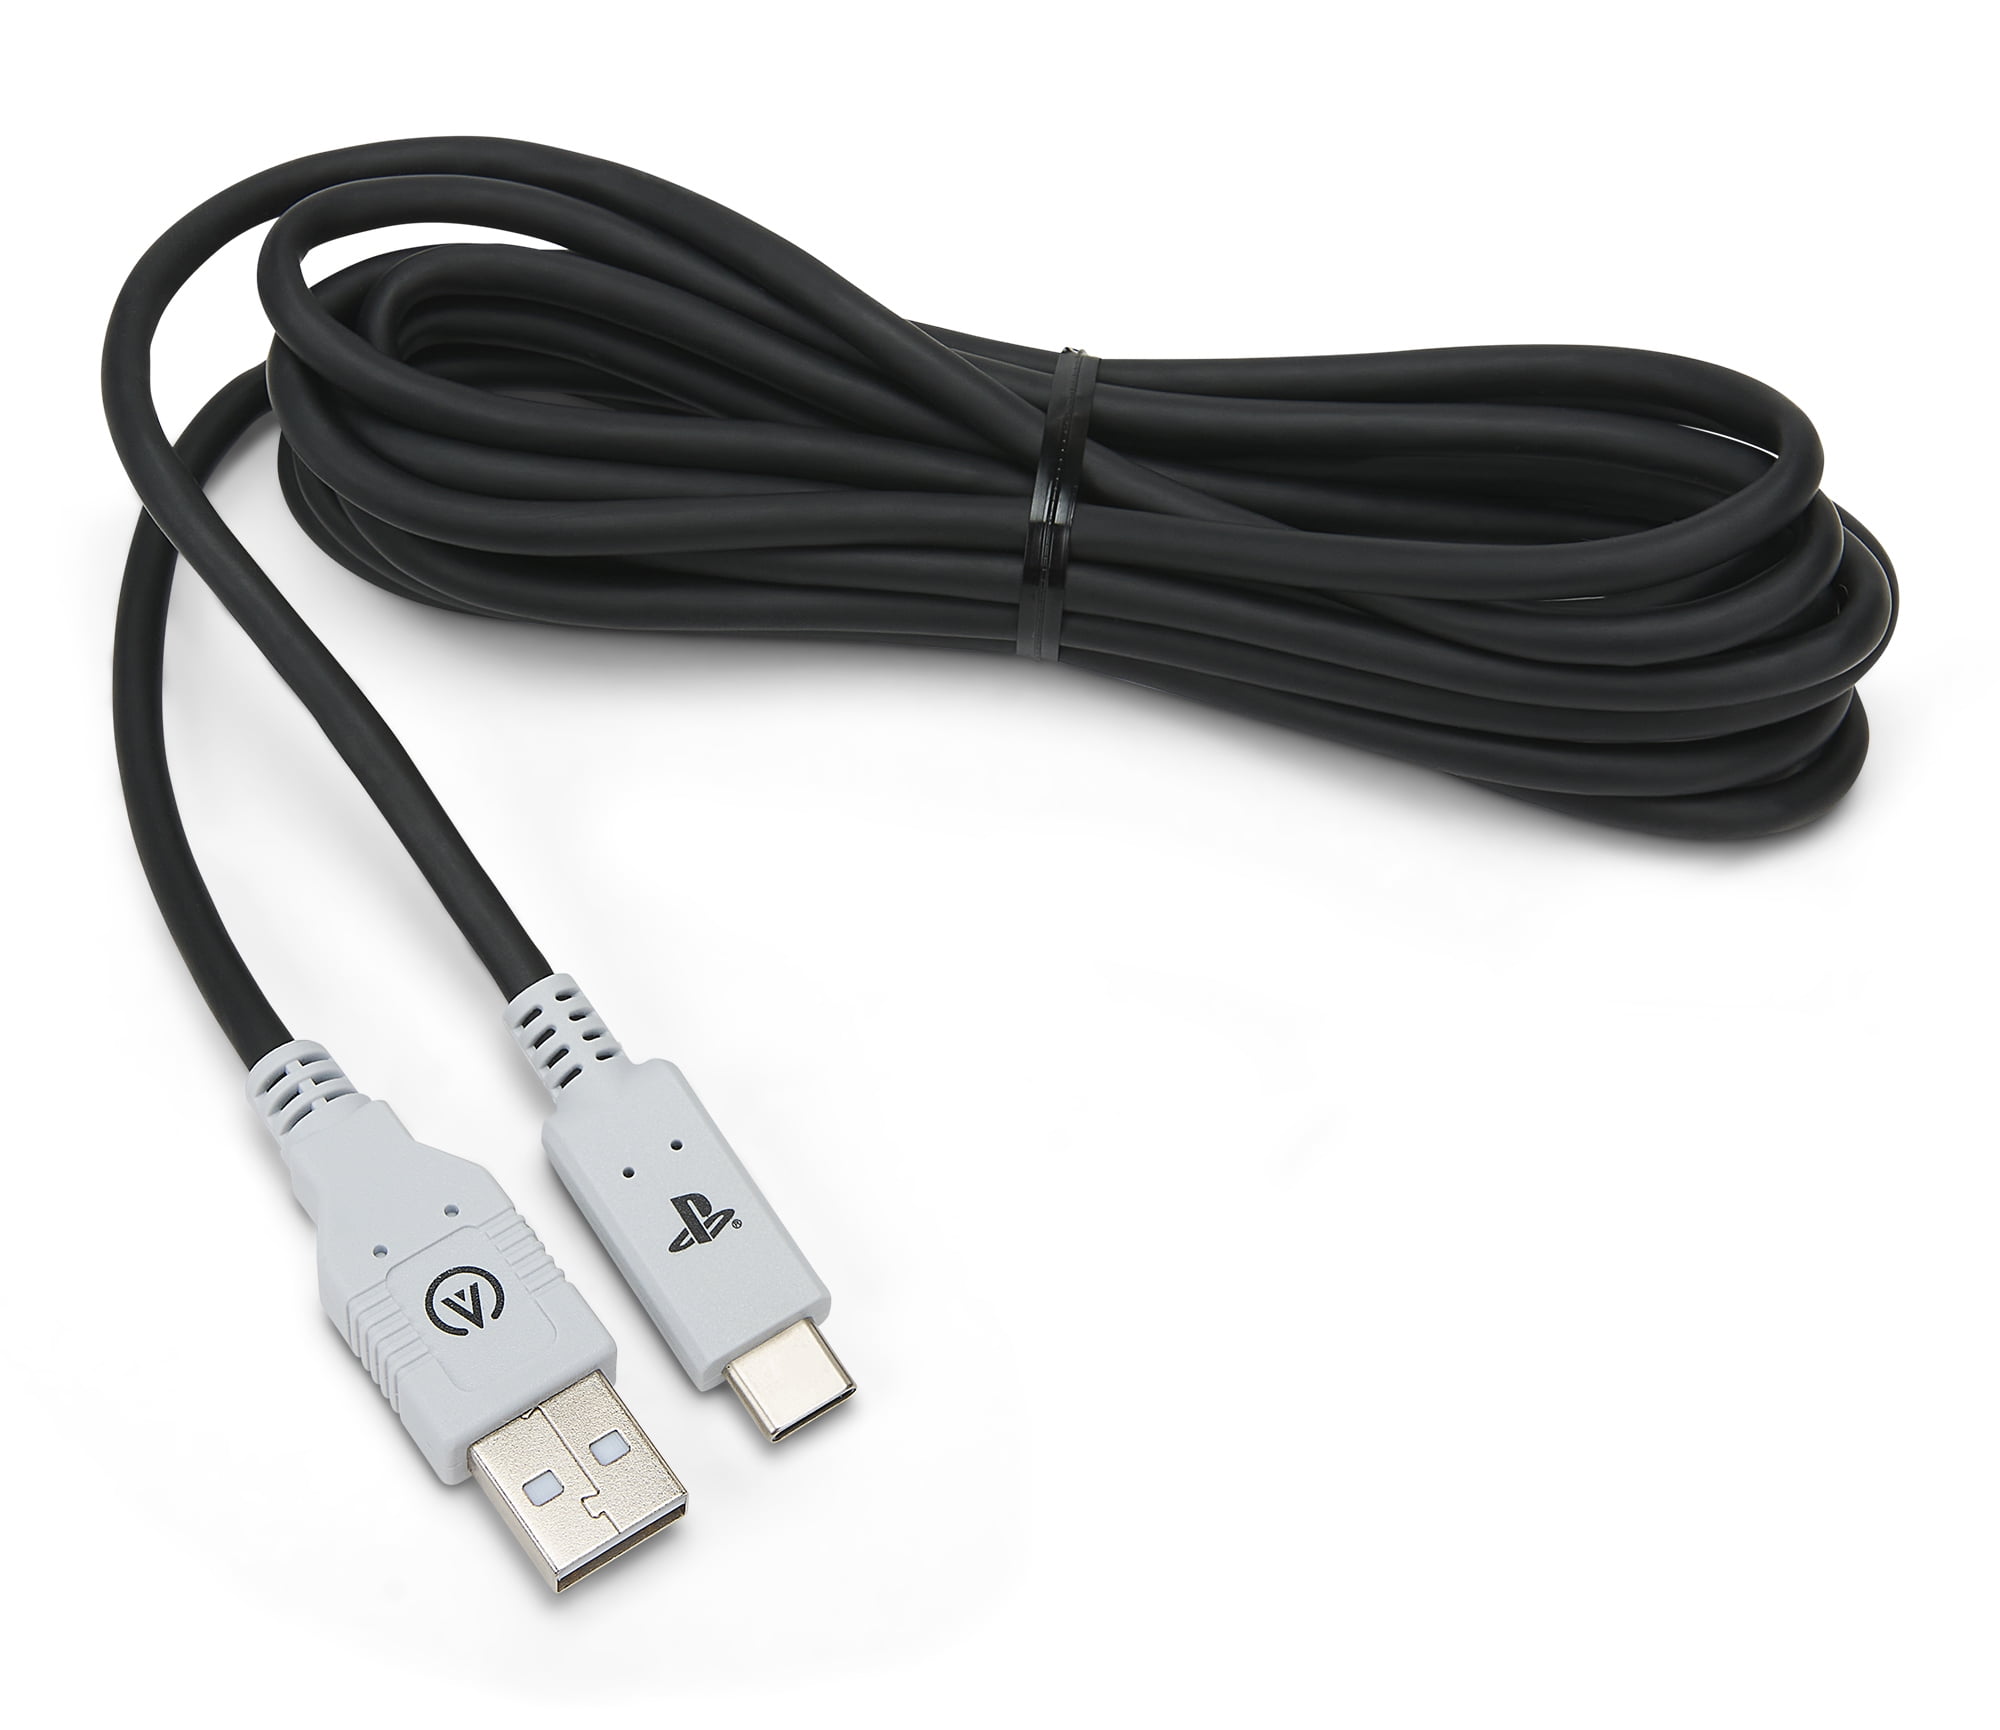 Cordon USB 3 mètres pour recharger manette Playstation 4 PS4 TOP